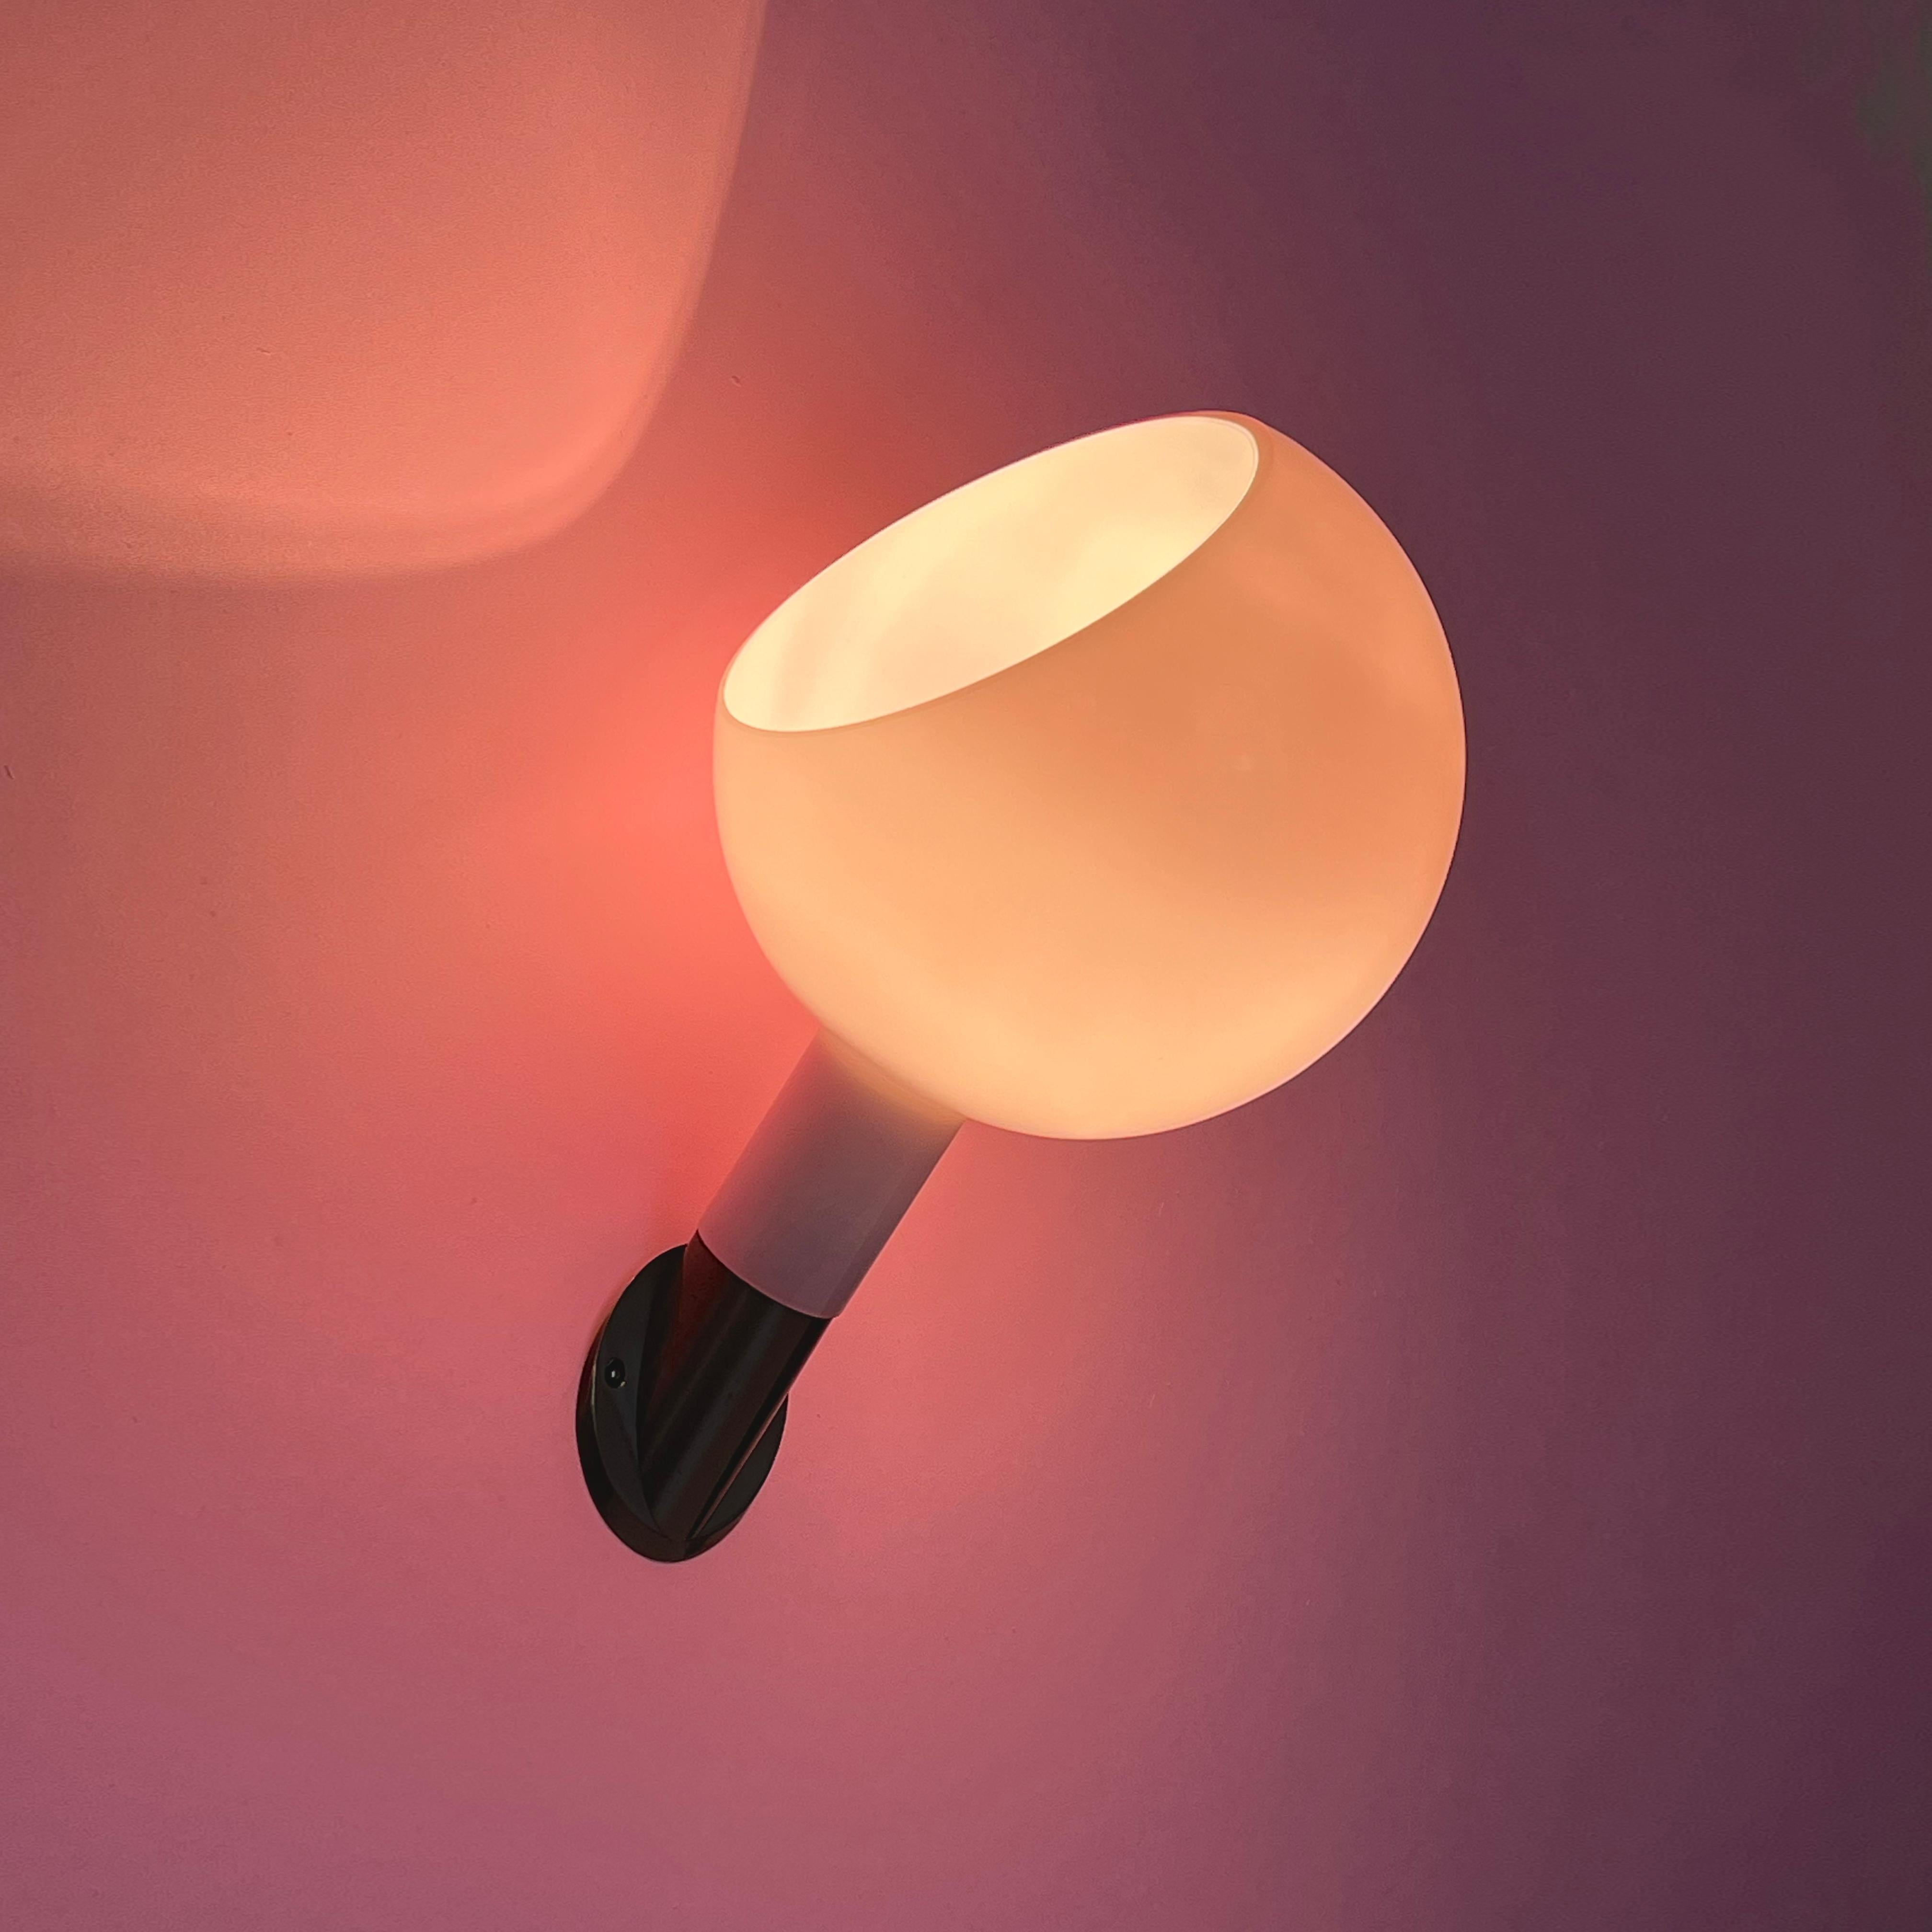 Collaboration de Gae Aulenti et Piero Castiglioni, la lampe Parola présente une fusion harmonieuse de trois techniques distinctes de travail du verre. L'abat-jour réglable est délicatement façonné en verre soufflé opalin, la tige est élégamment